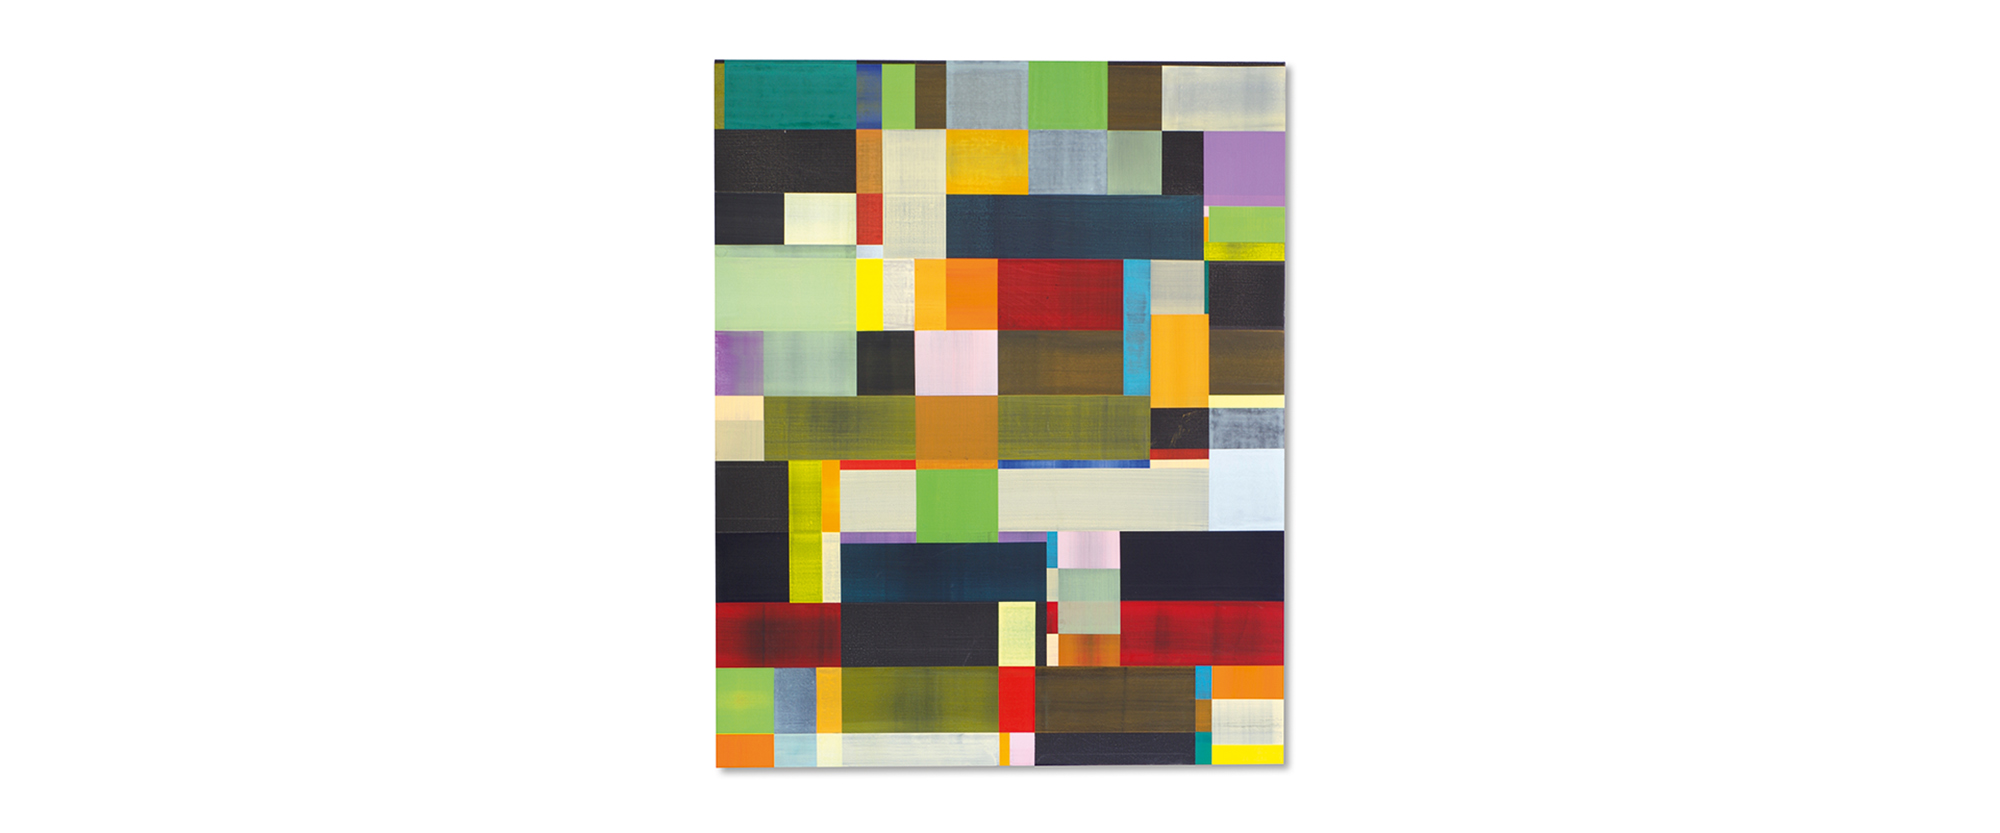 KE-130.17 - 2014, Pigmente, Mattfirnis auf Holzkörper, Stahleinfassung, 130 x 105 x 5 cm